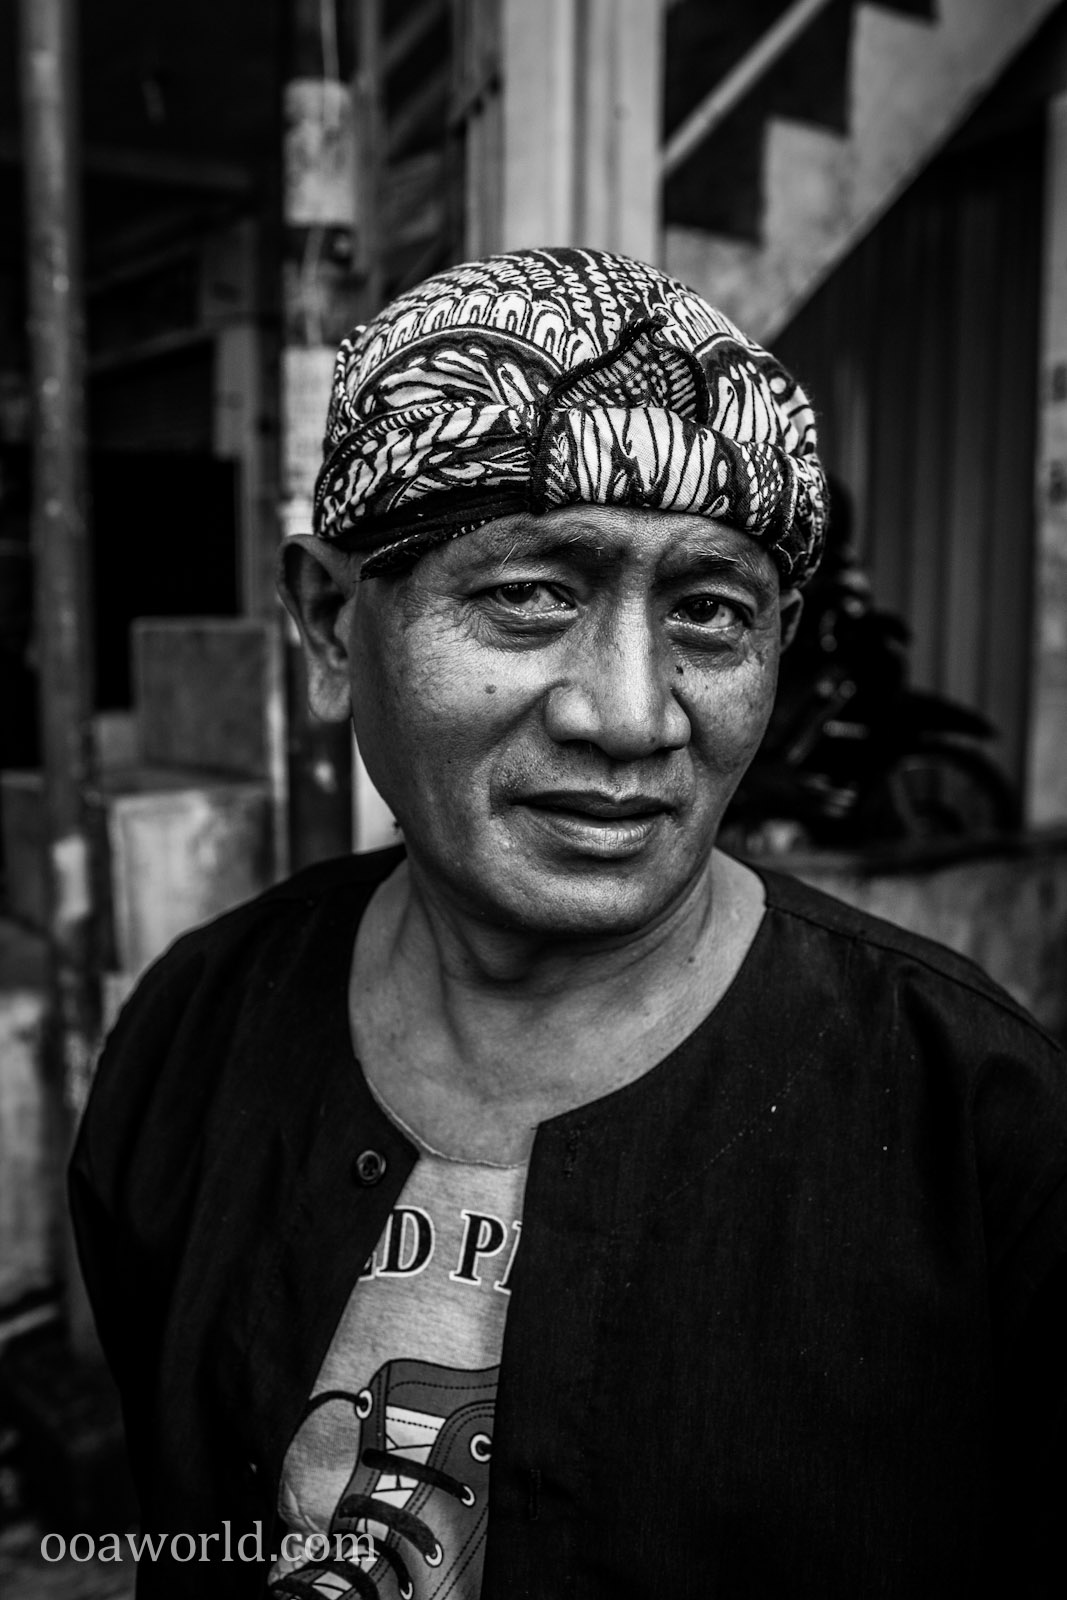 Bandung Man Portrait Indonesia Photo Ooaworld